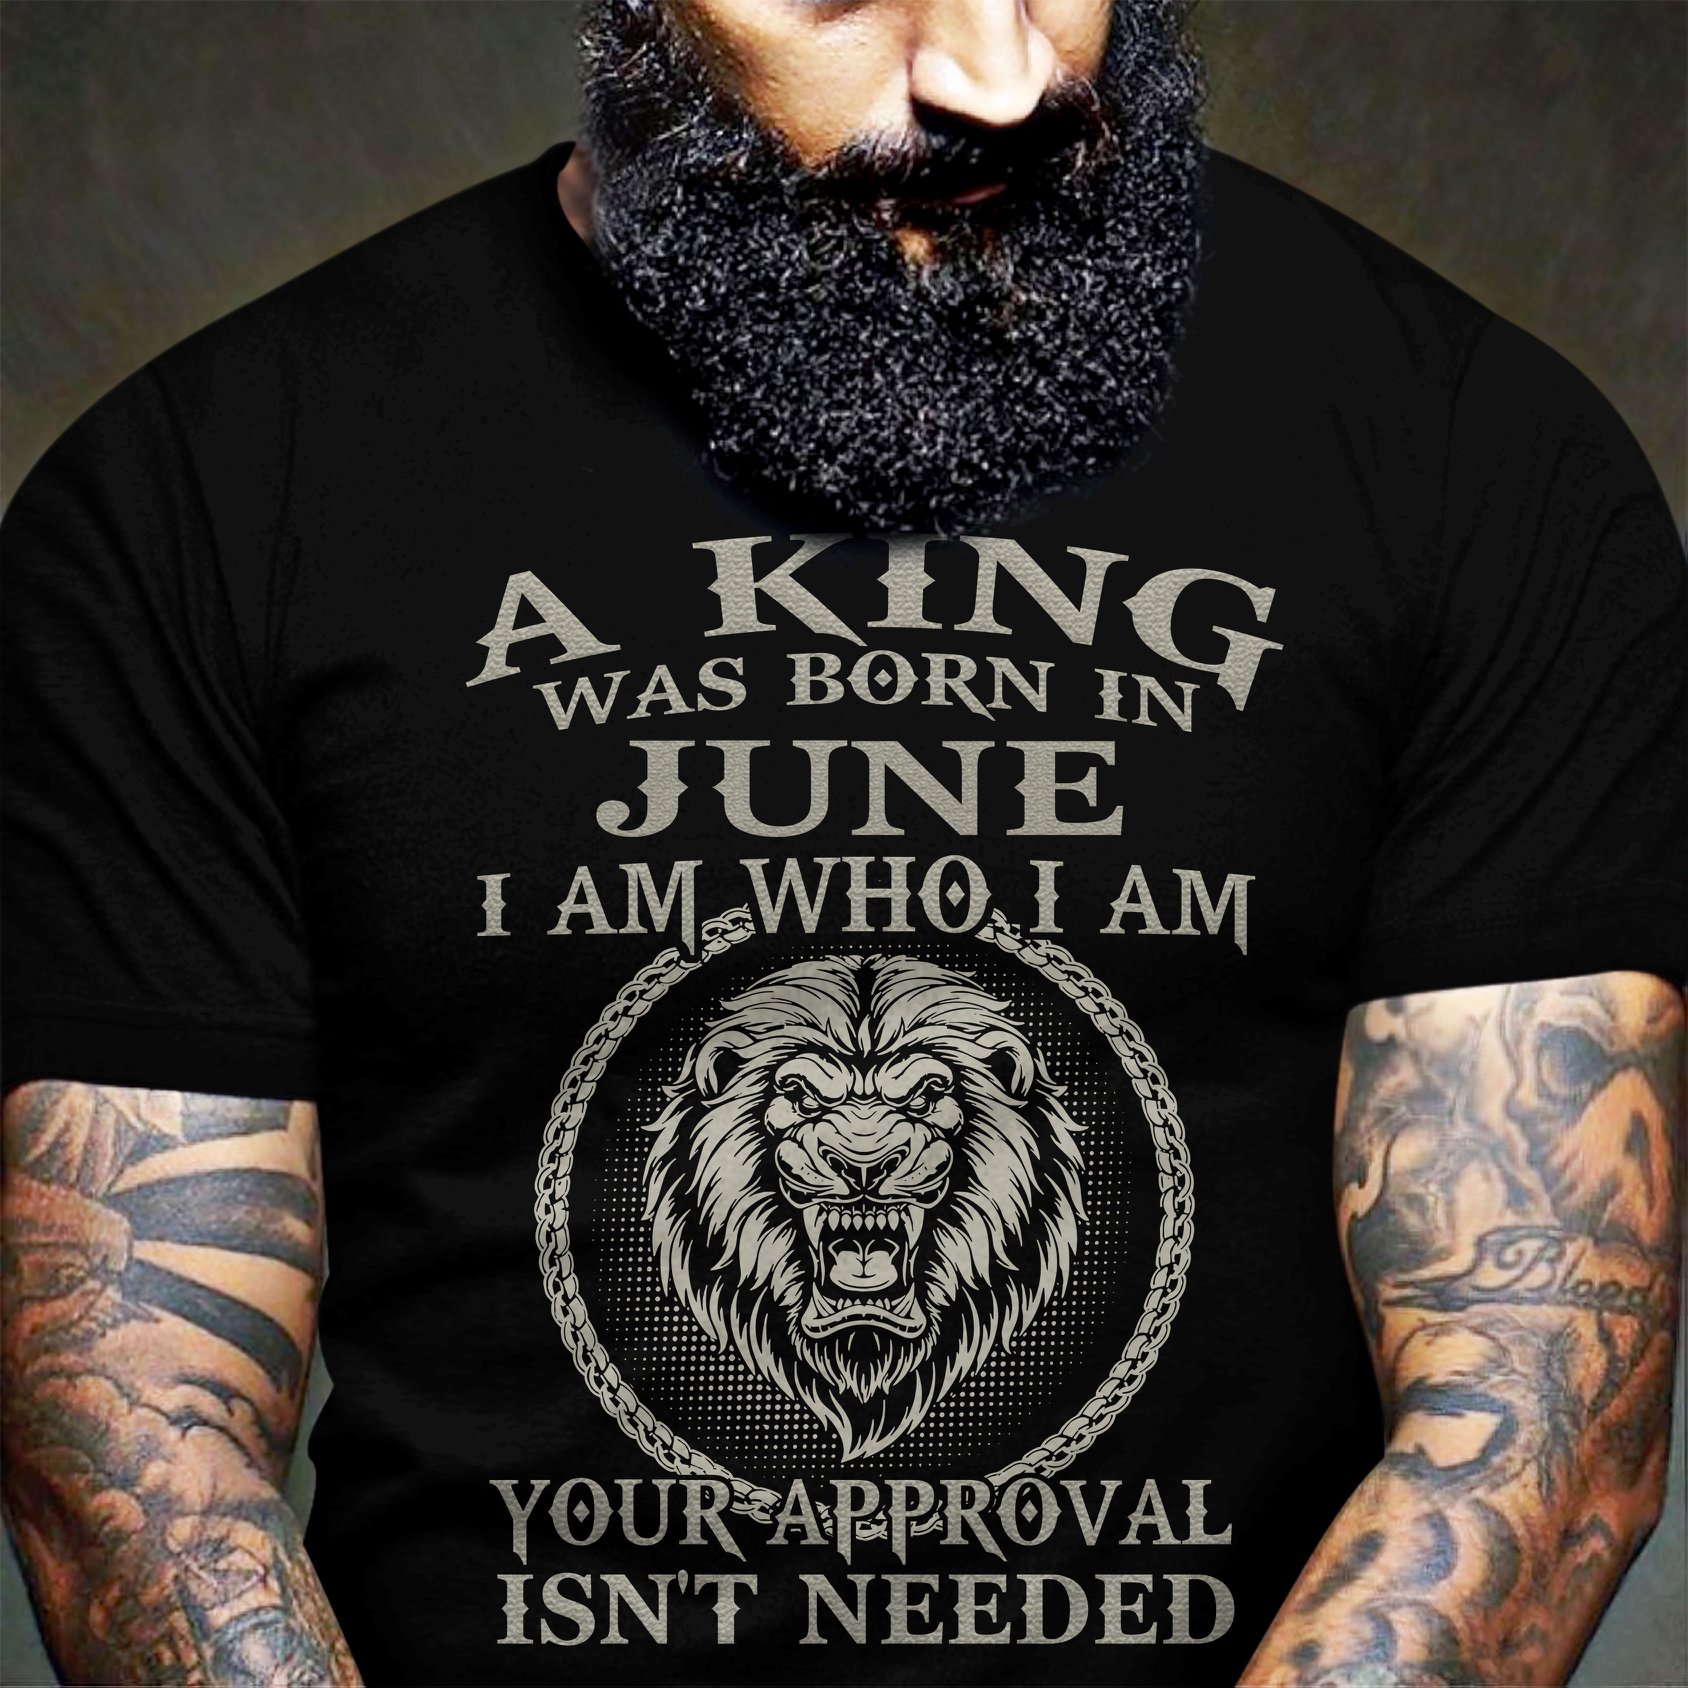 A king was born in June I am who I am - The king and lion